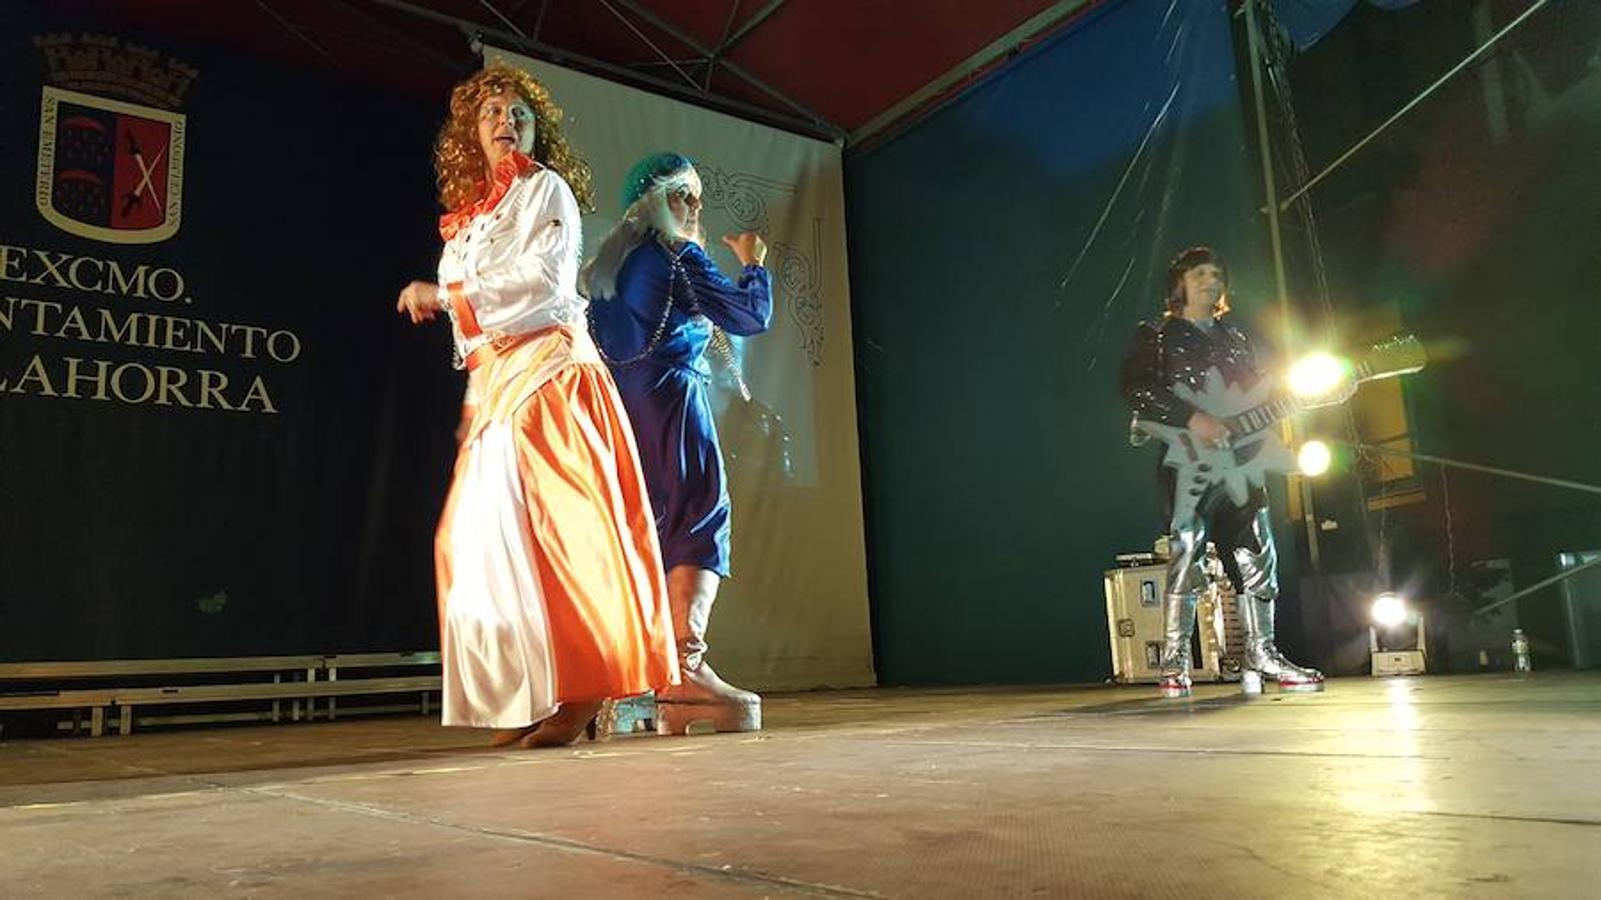 La Peña Riojana organizó el pasado sábado la fiesta del 'play back' en Calahorra, como anticipo de las próximas fiestas locales. Fantásticas actuaciones y coreografías animaron la Plaza del Raso.